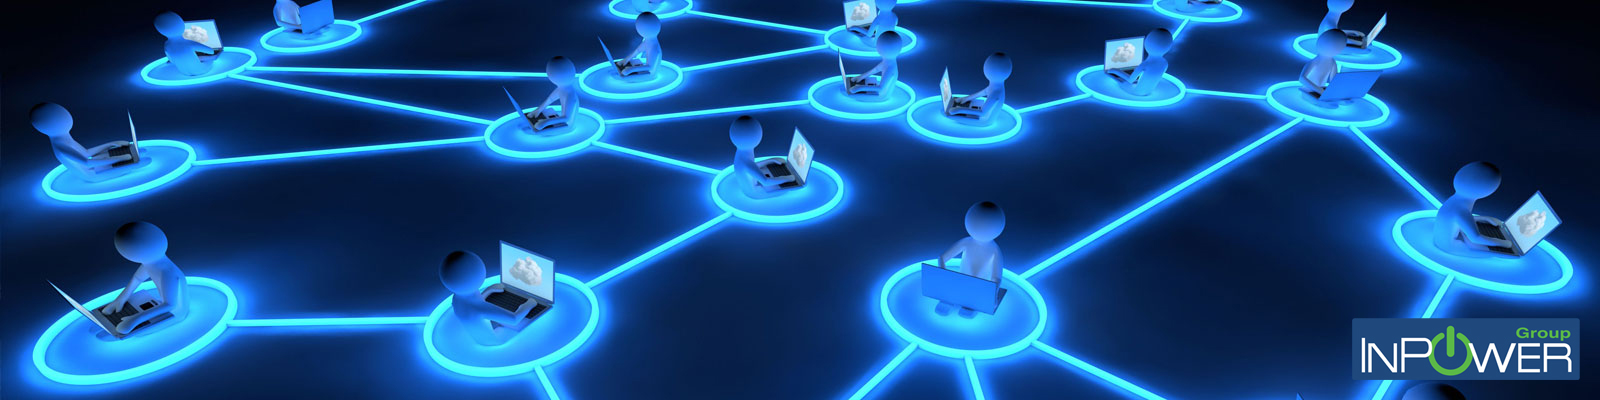 Progettazione infrastrutture ICT INPOWER-GROUP Networking reti wireless e telefonia IP  Azienda personalizzazione energetico operatori point 